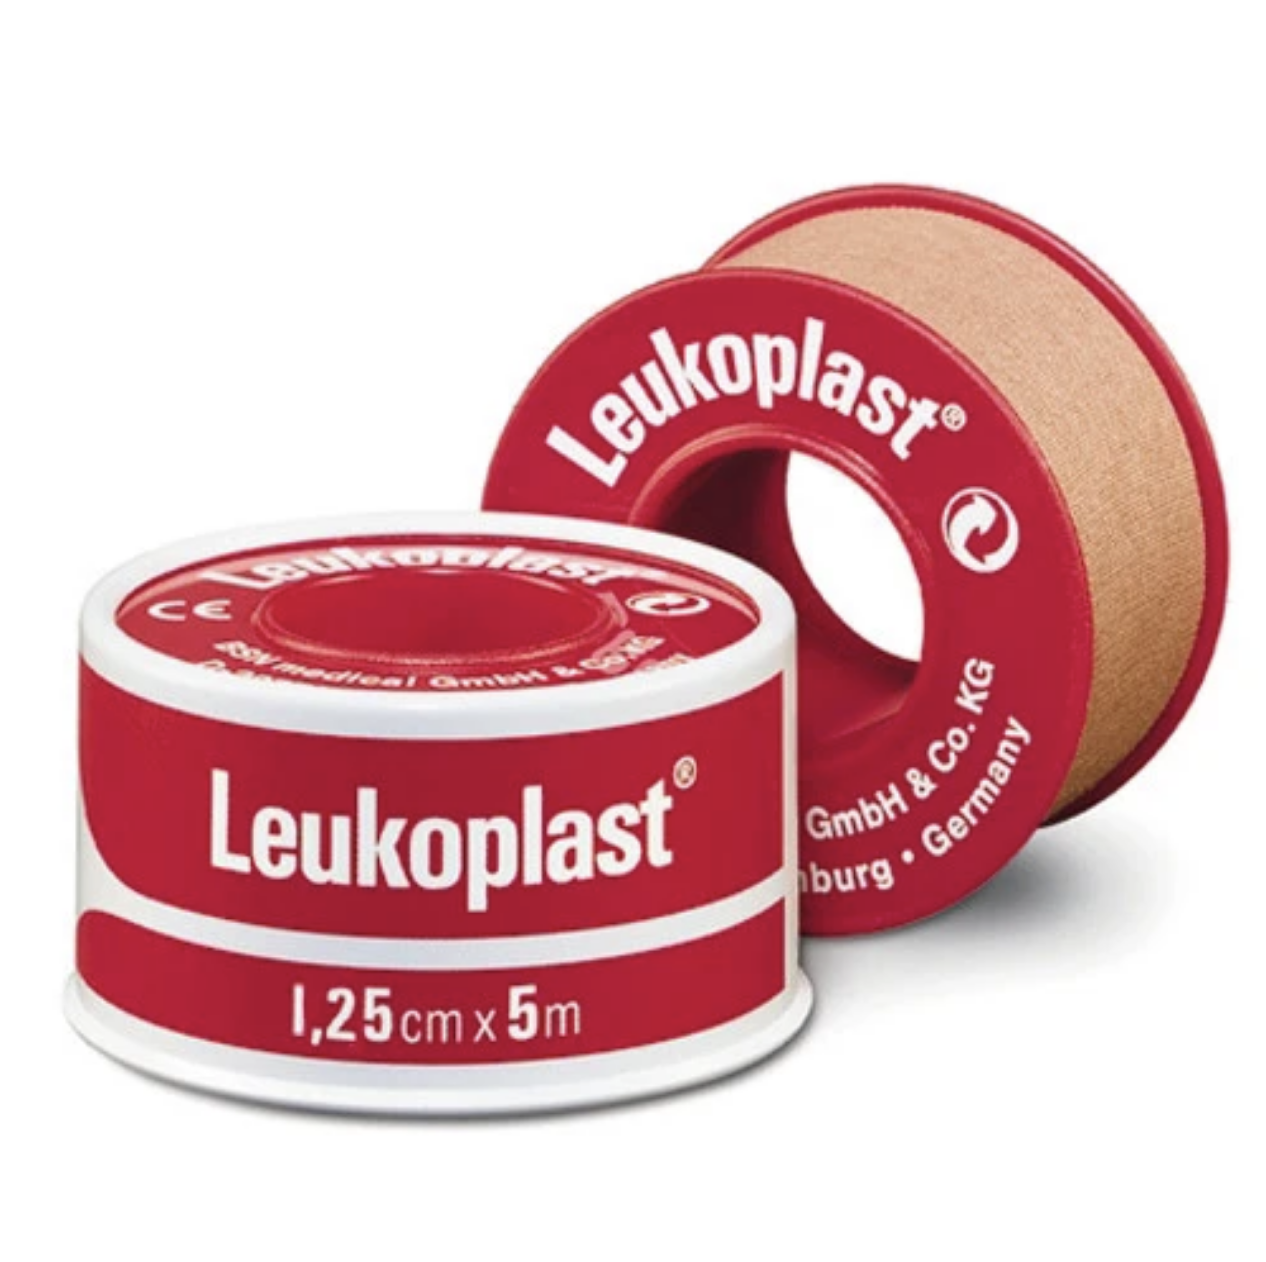 Leukoplast Standard Red Spool Tape 1.25cm x 5m